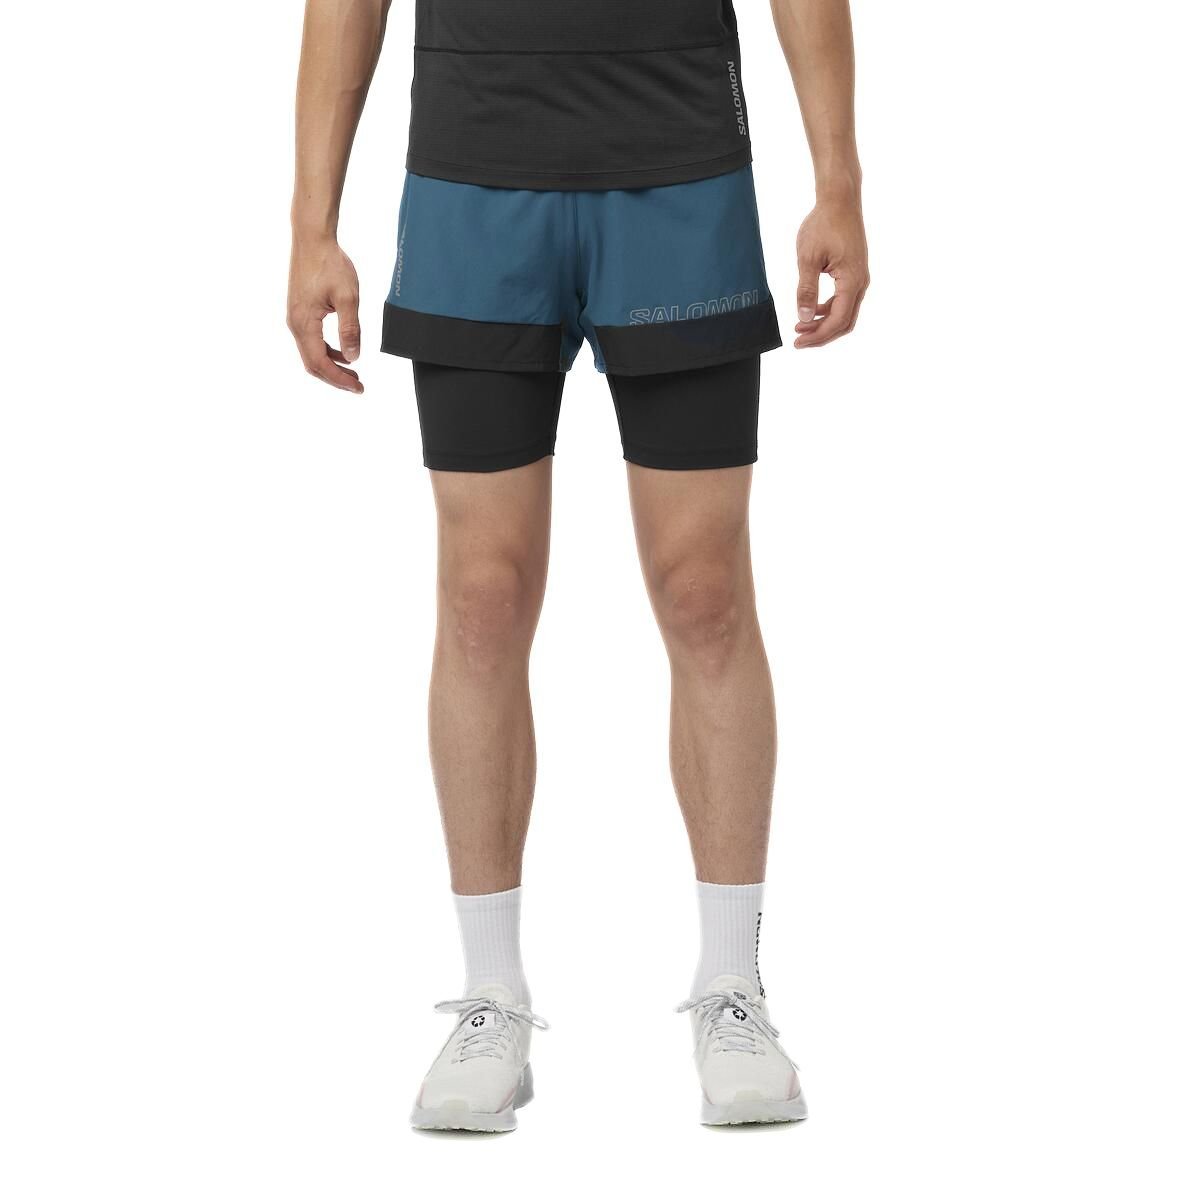 Šortky Salomon Cross 2IN1 Shorts M - modrá/čierna